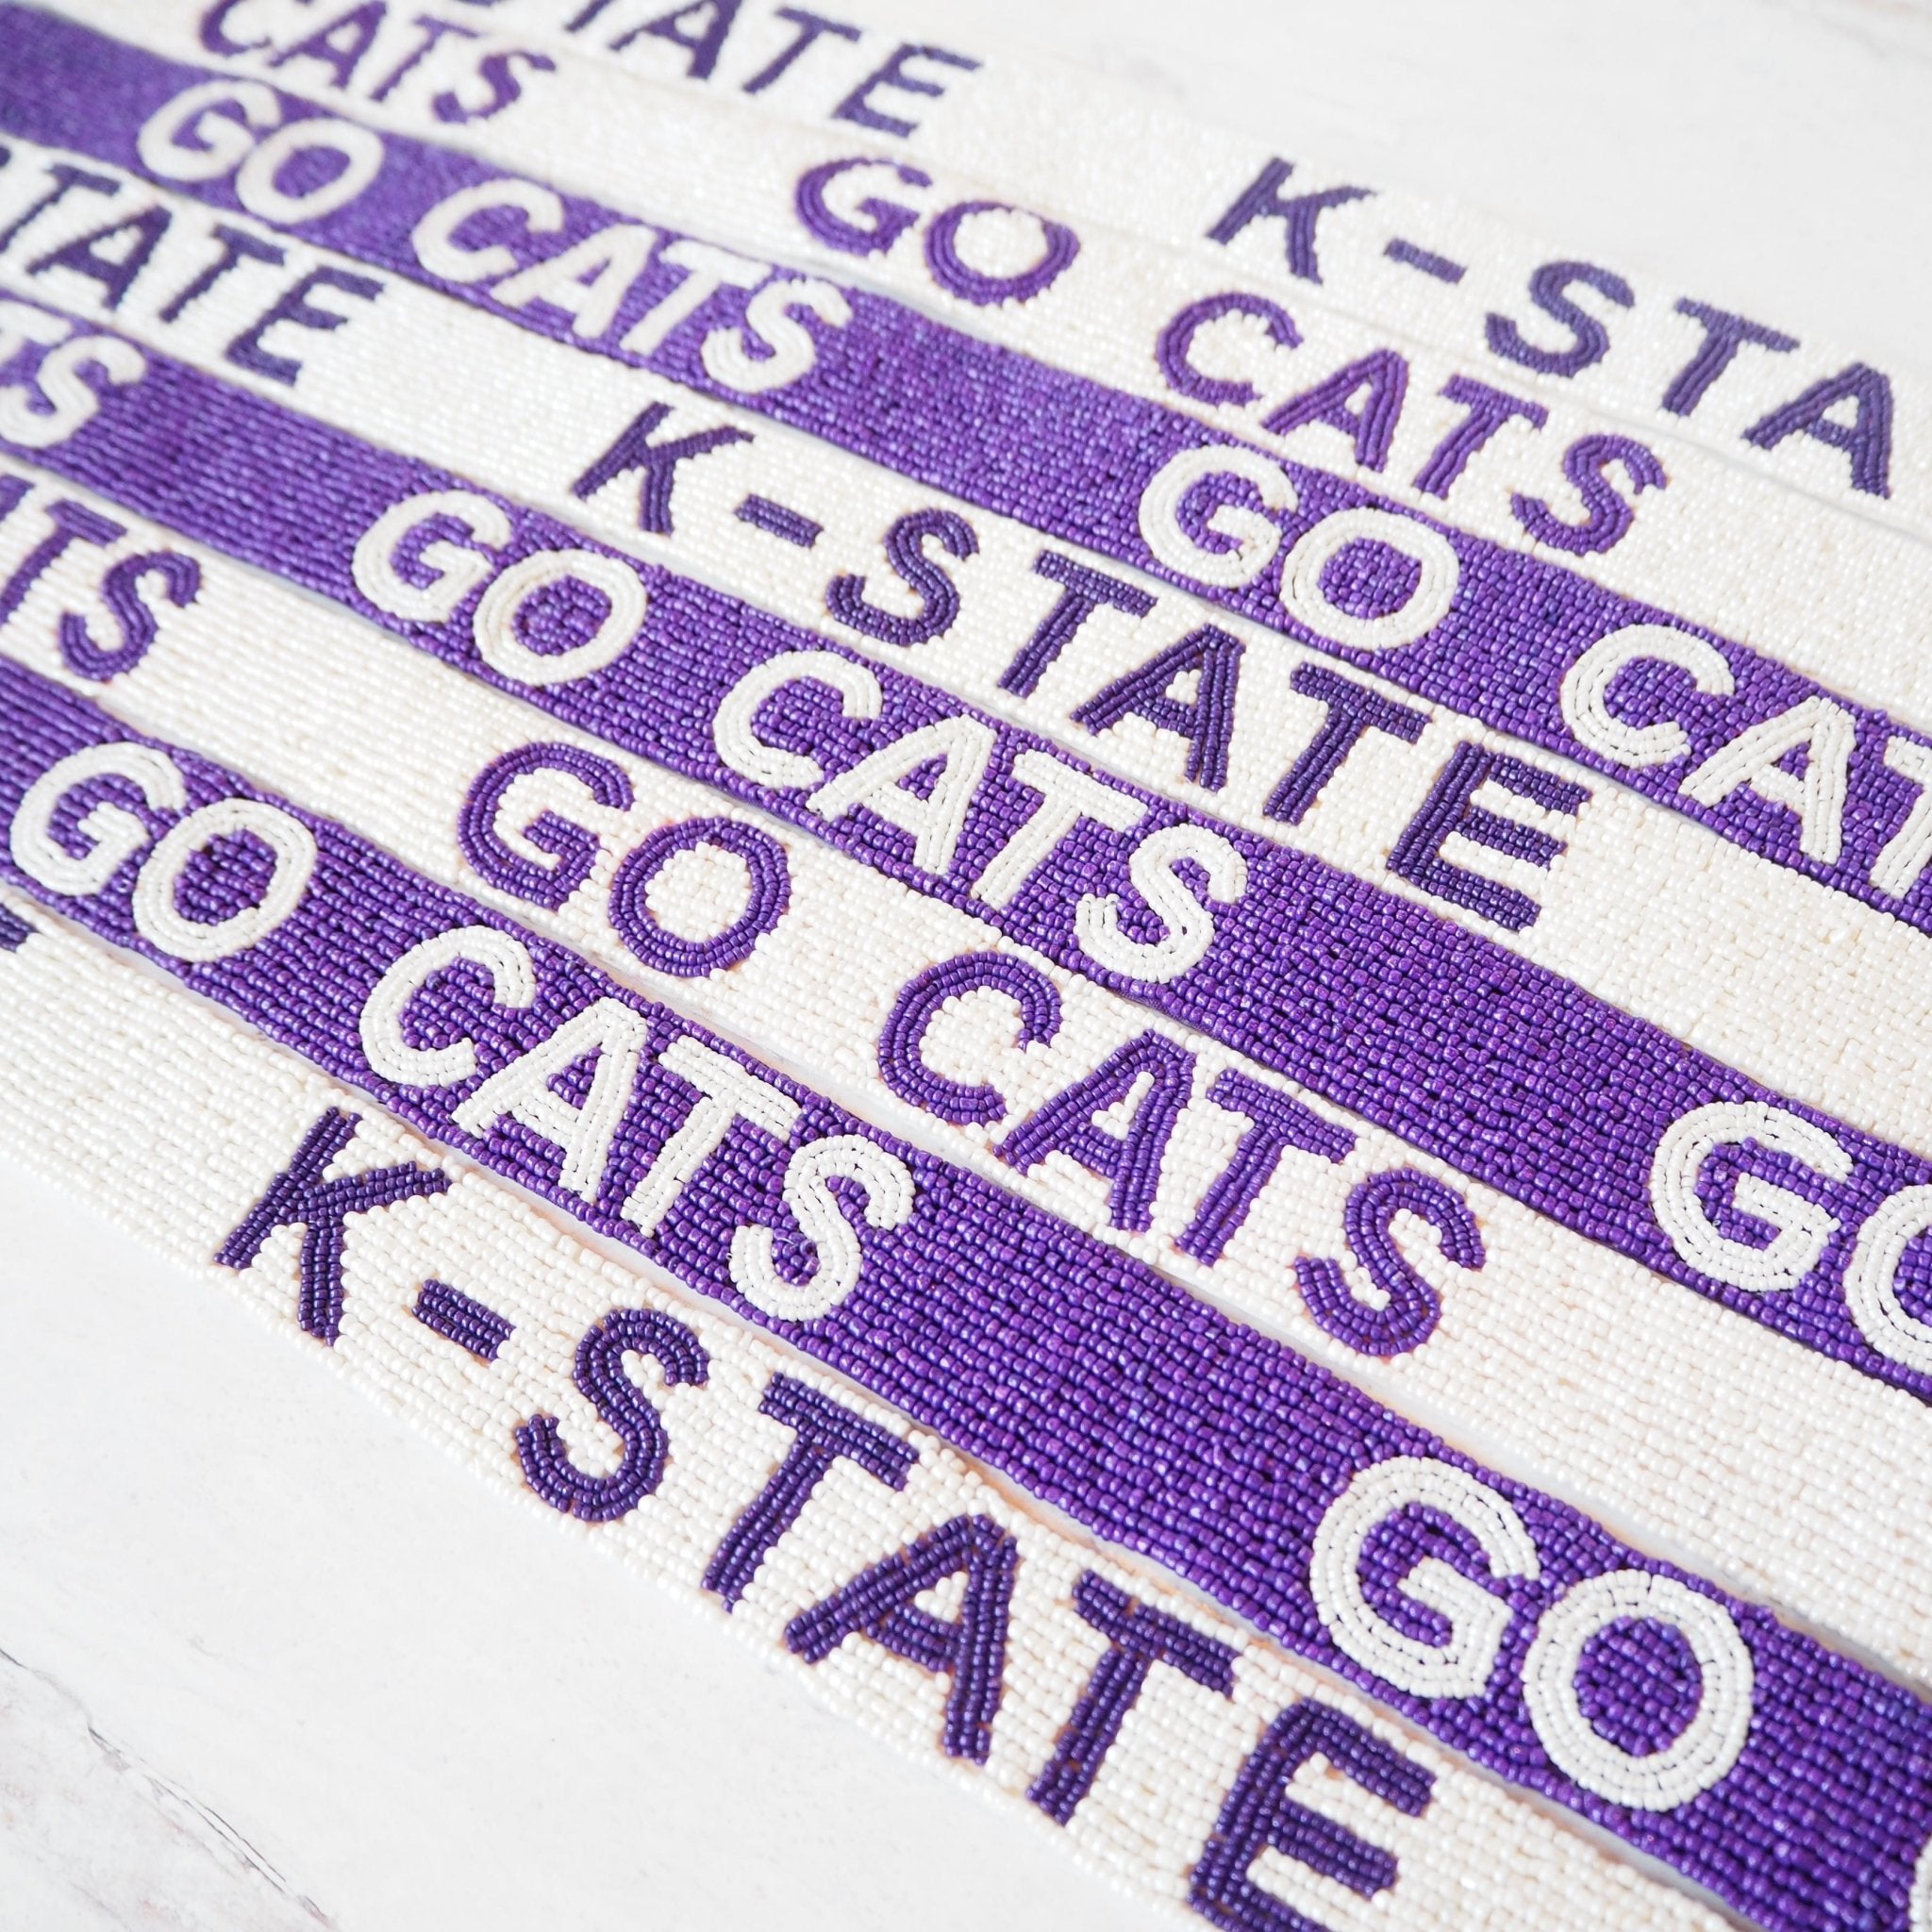 Cats, Kentucky Purse Strap